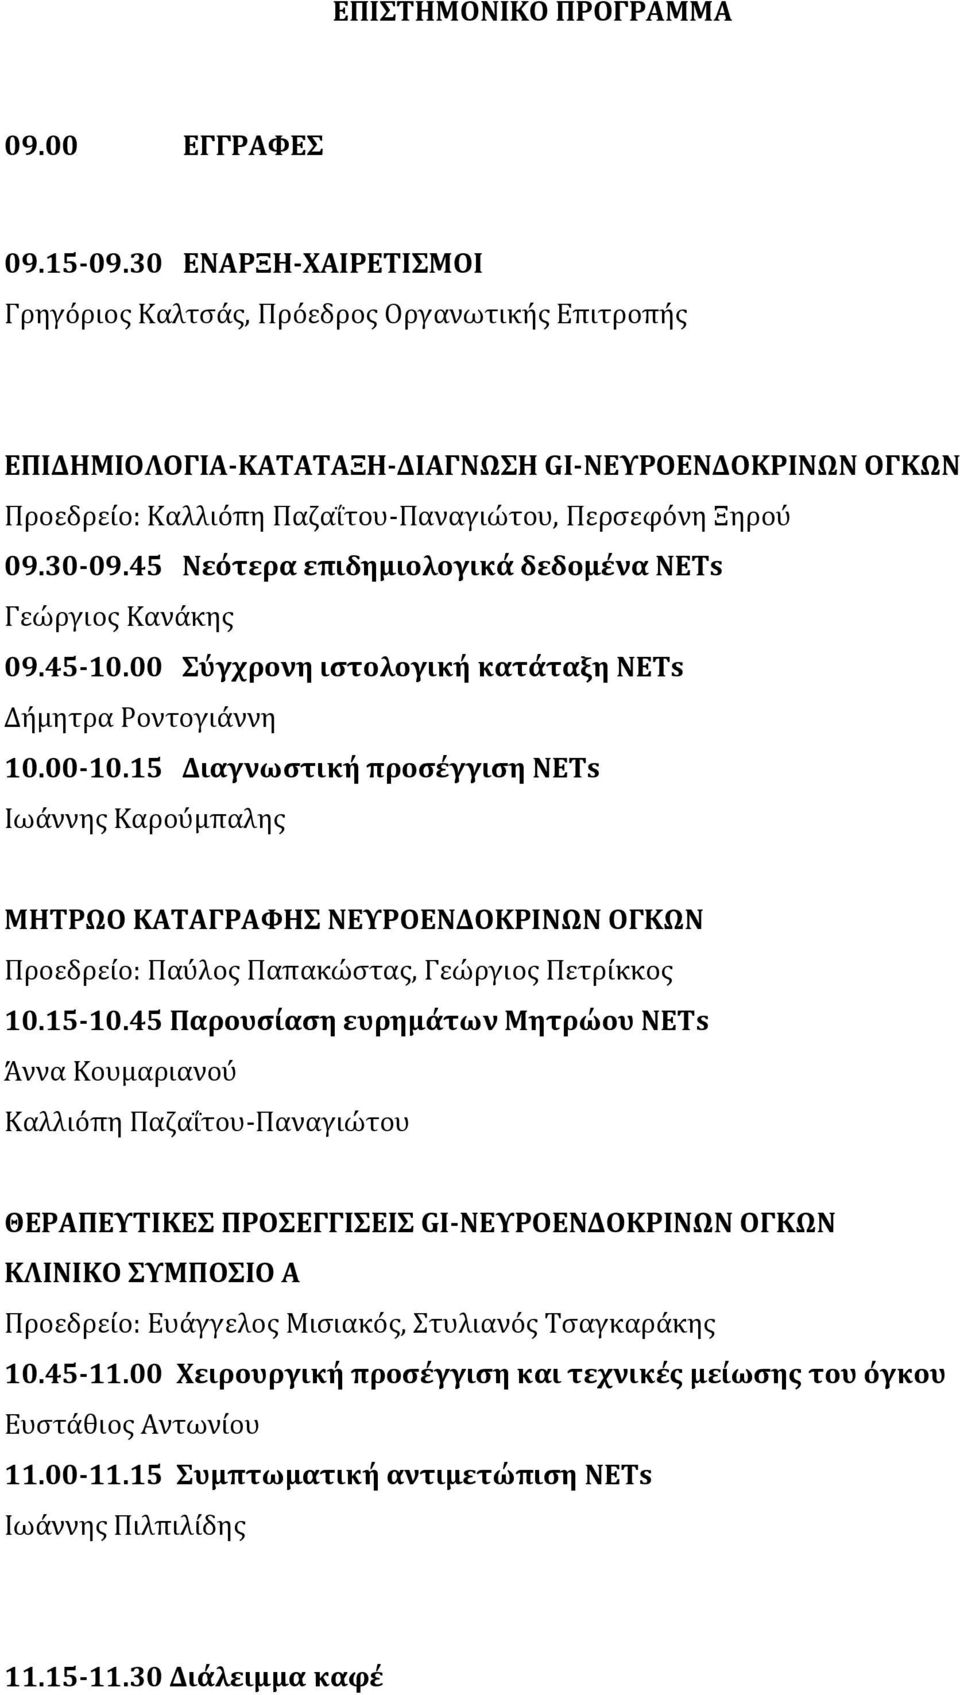 45 Νεότερα επιδημιολογικά δεδομένα ΝΕΤs Γεώργιος Κανάκης 09.45-10.00 Σύγχρονη ιστολογική κατάταξη ΝΕΤs Δήμητρα Ροντογιάννη 10.00-10.